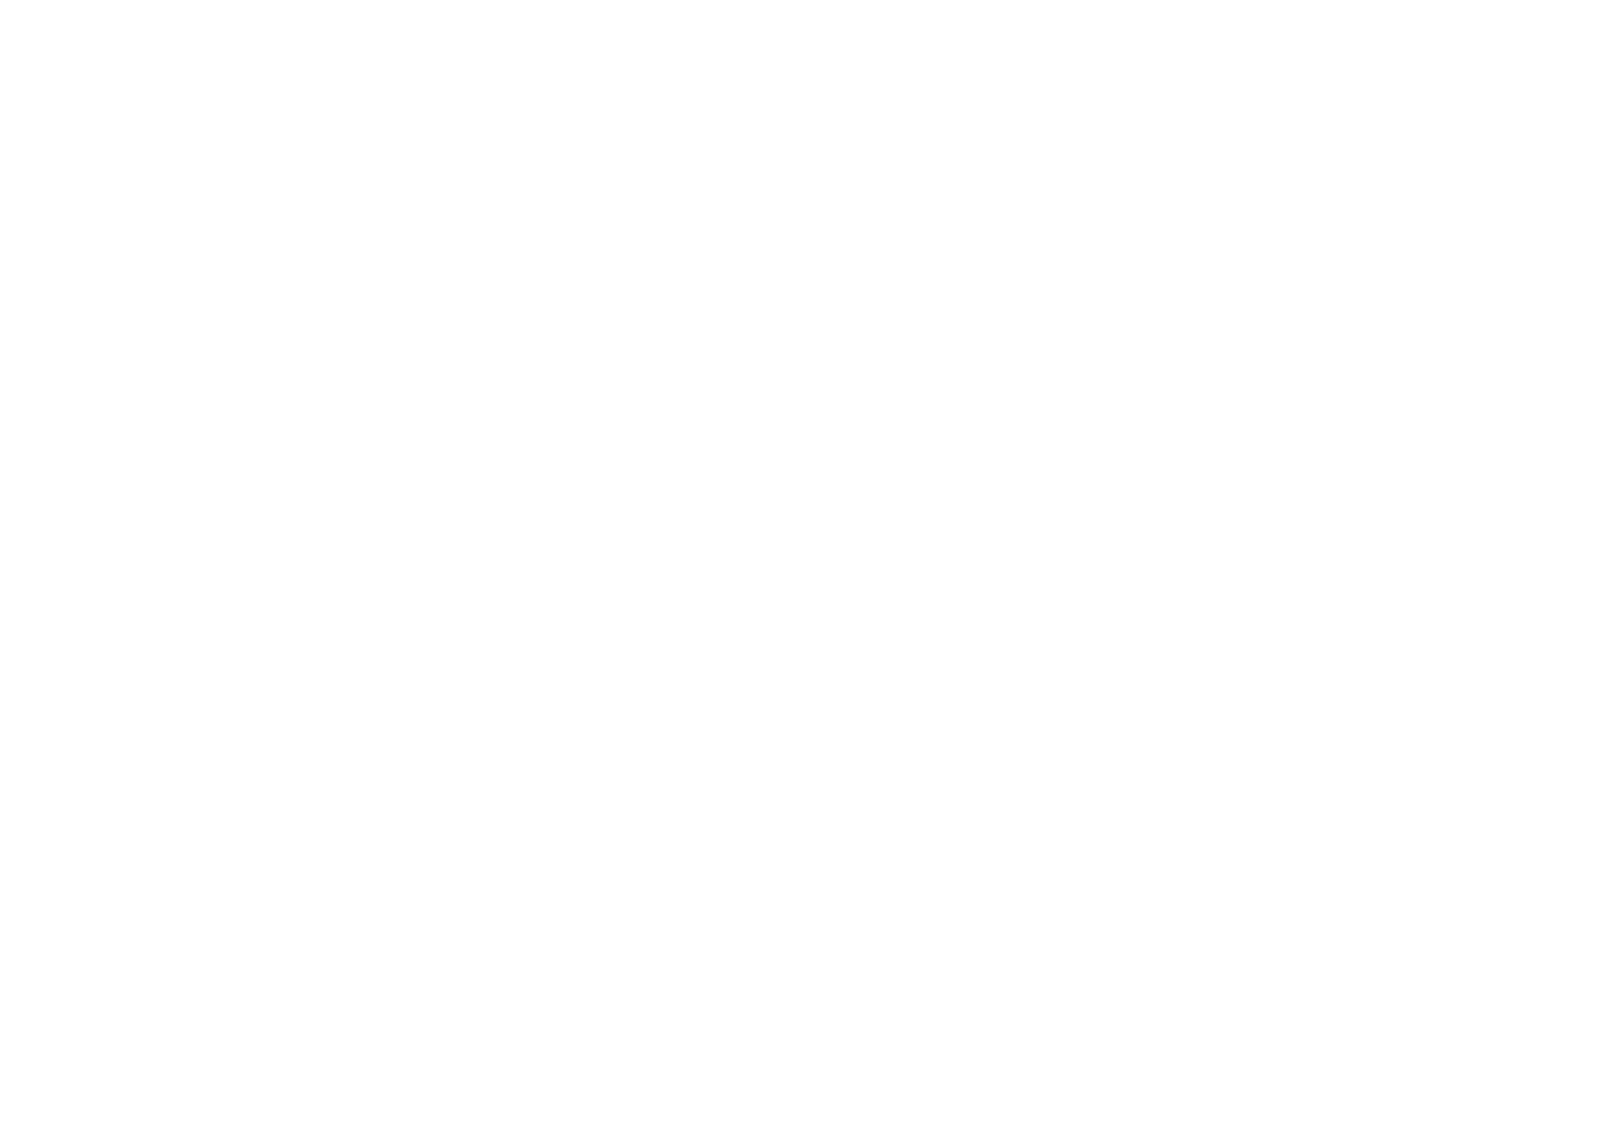 小室哲哉、つんく♂、HKT48・指原莉乃、織田哲郎、秋元康のプロデュースバトルにネットでは「心臓バクバク」と話題サムネイル画像!